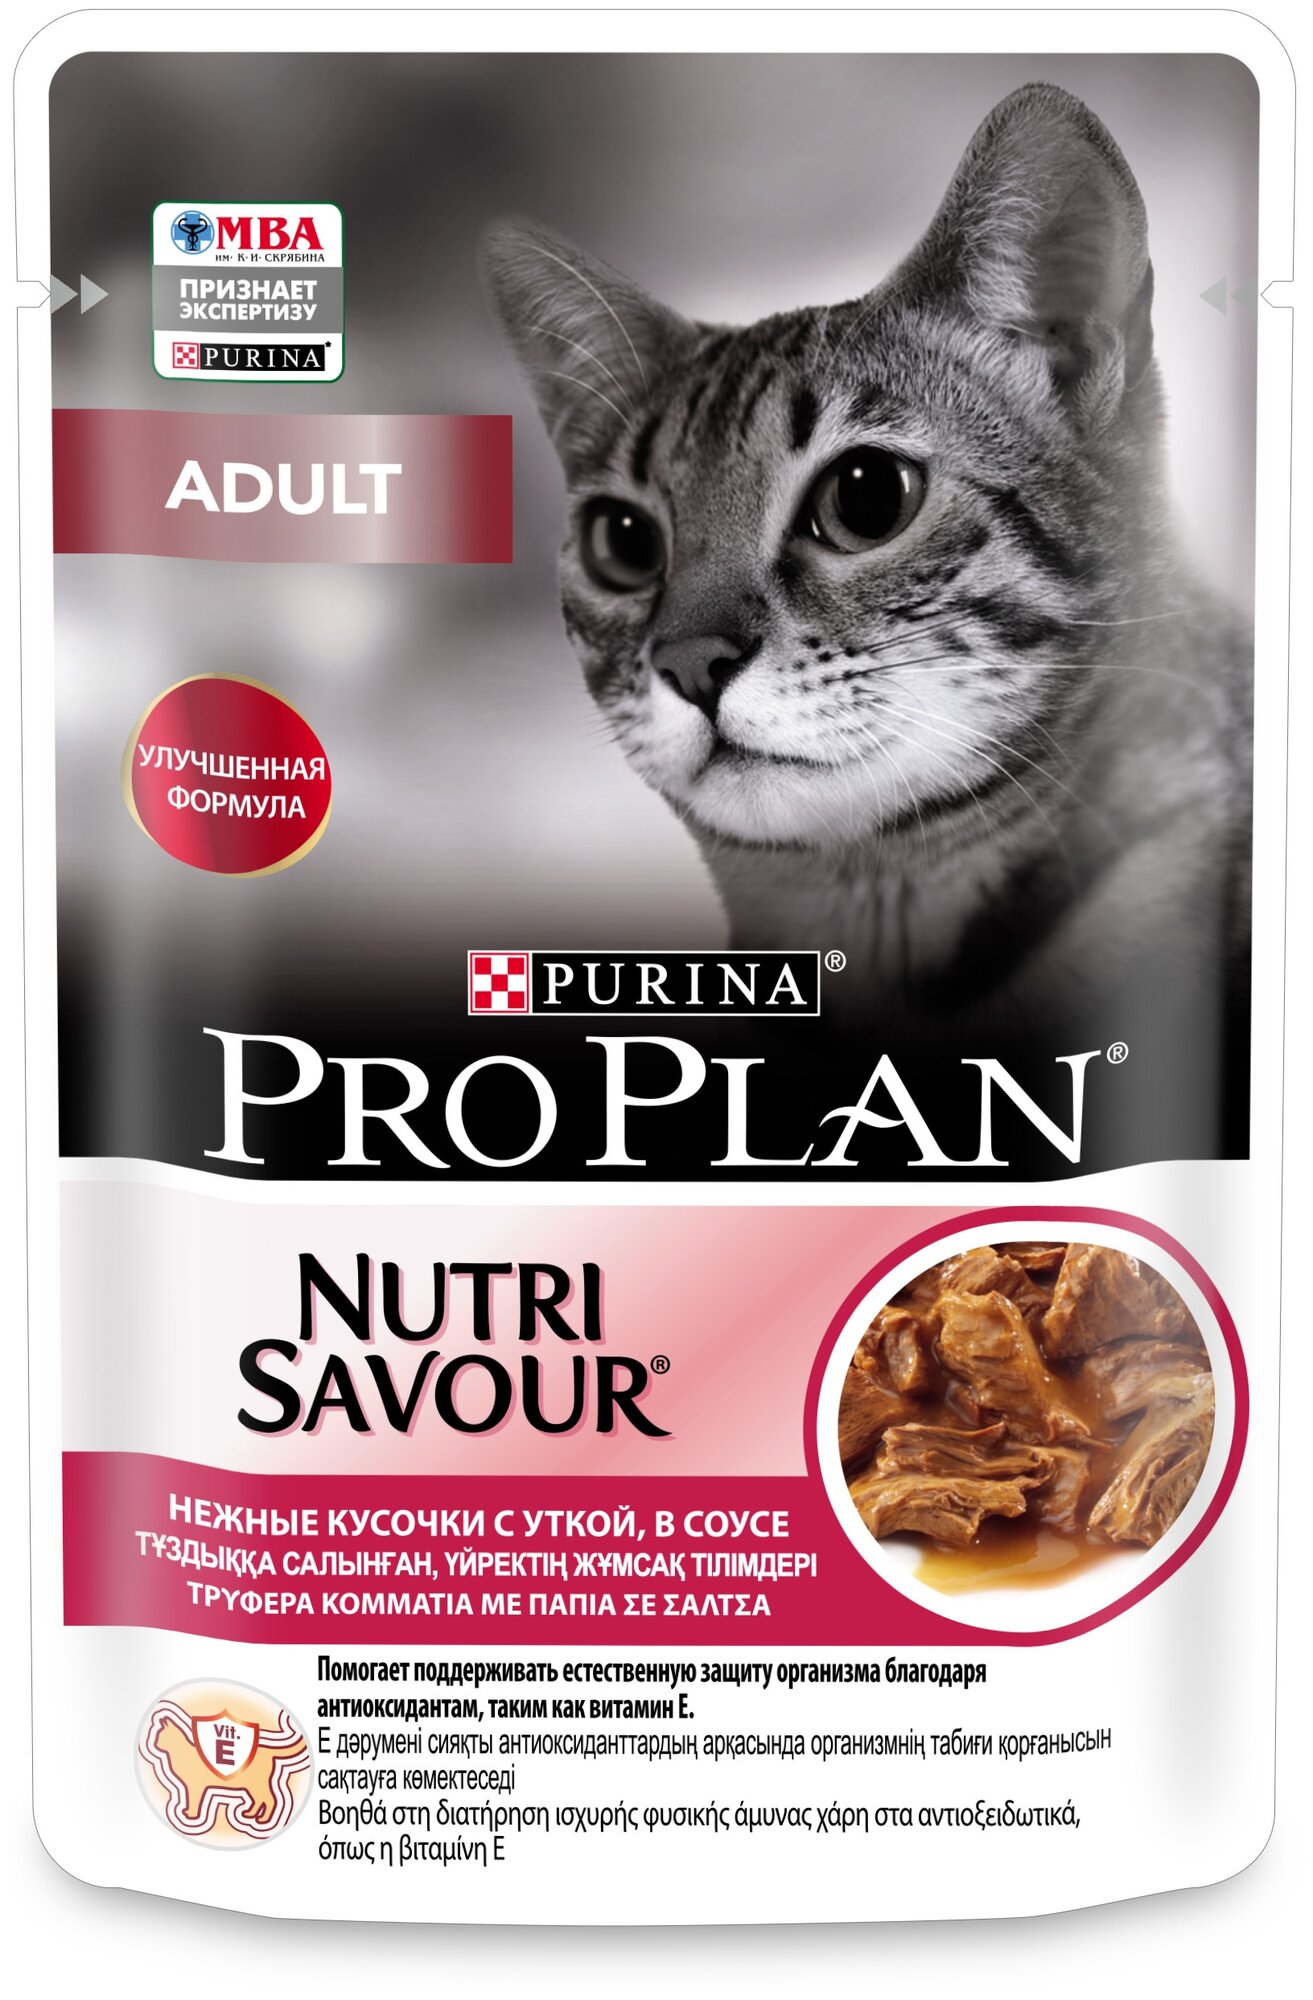 Pro Plan ® Nutri Savour влажный корм для взрослых кошек, нежные кусочки с уткой, в соусе, 85 г - фото №7